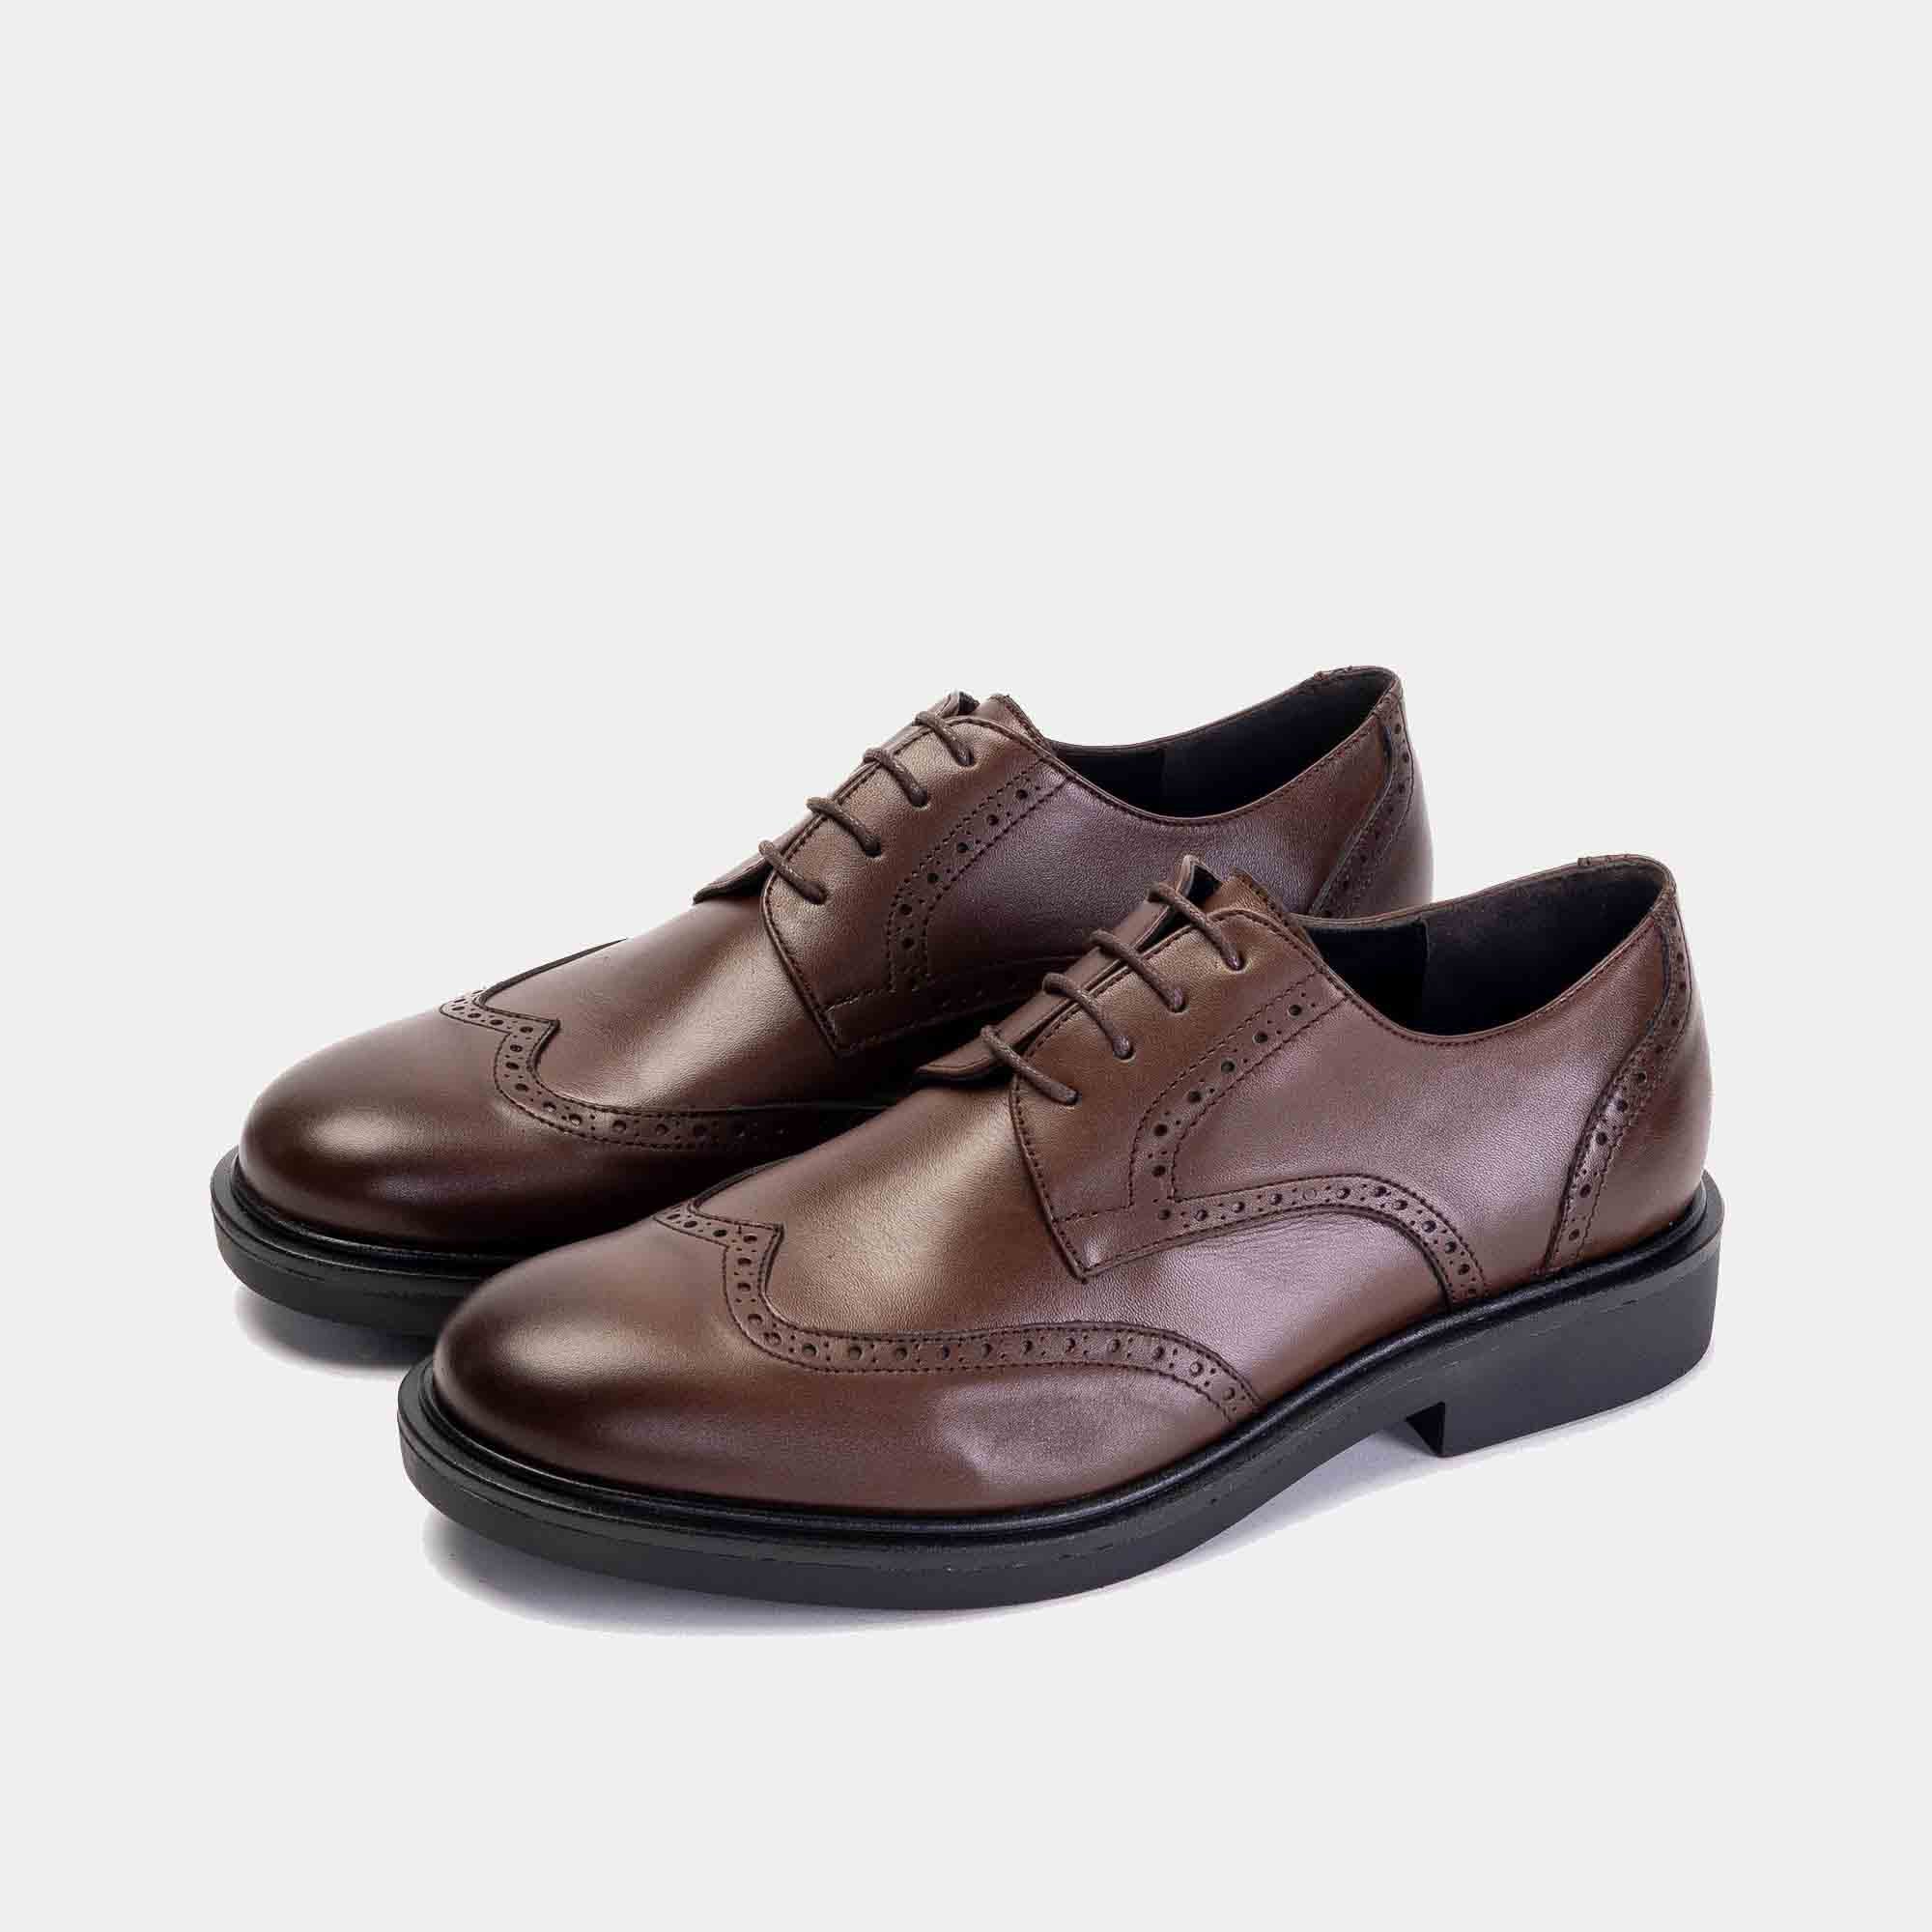 550 Chaussure cuir Marron